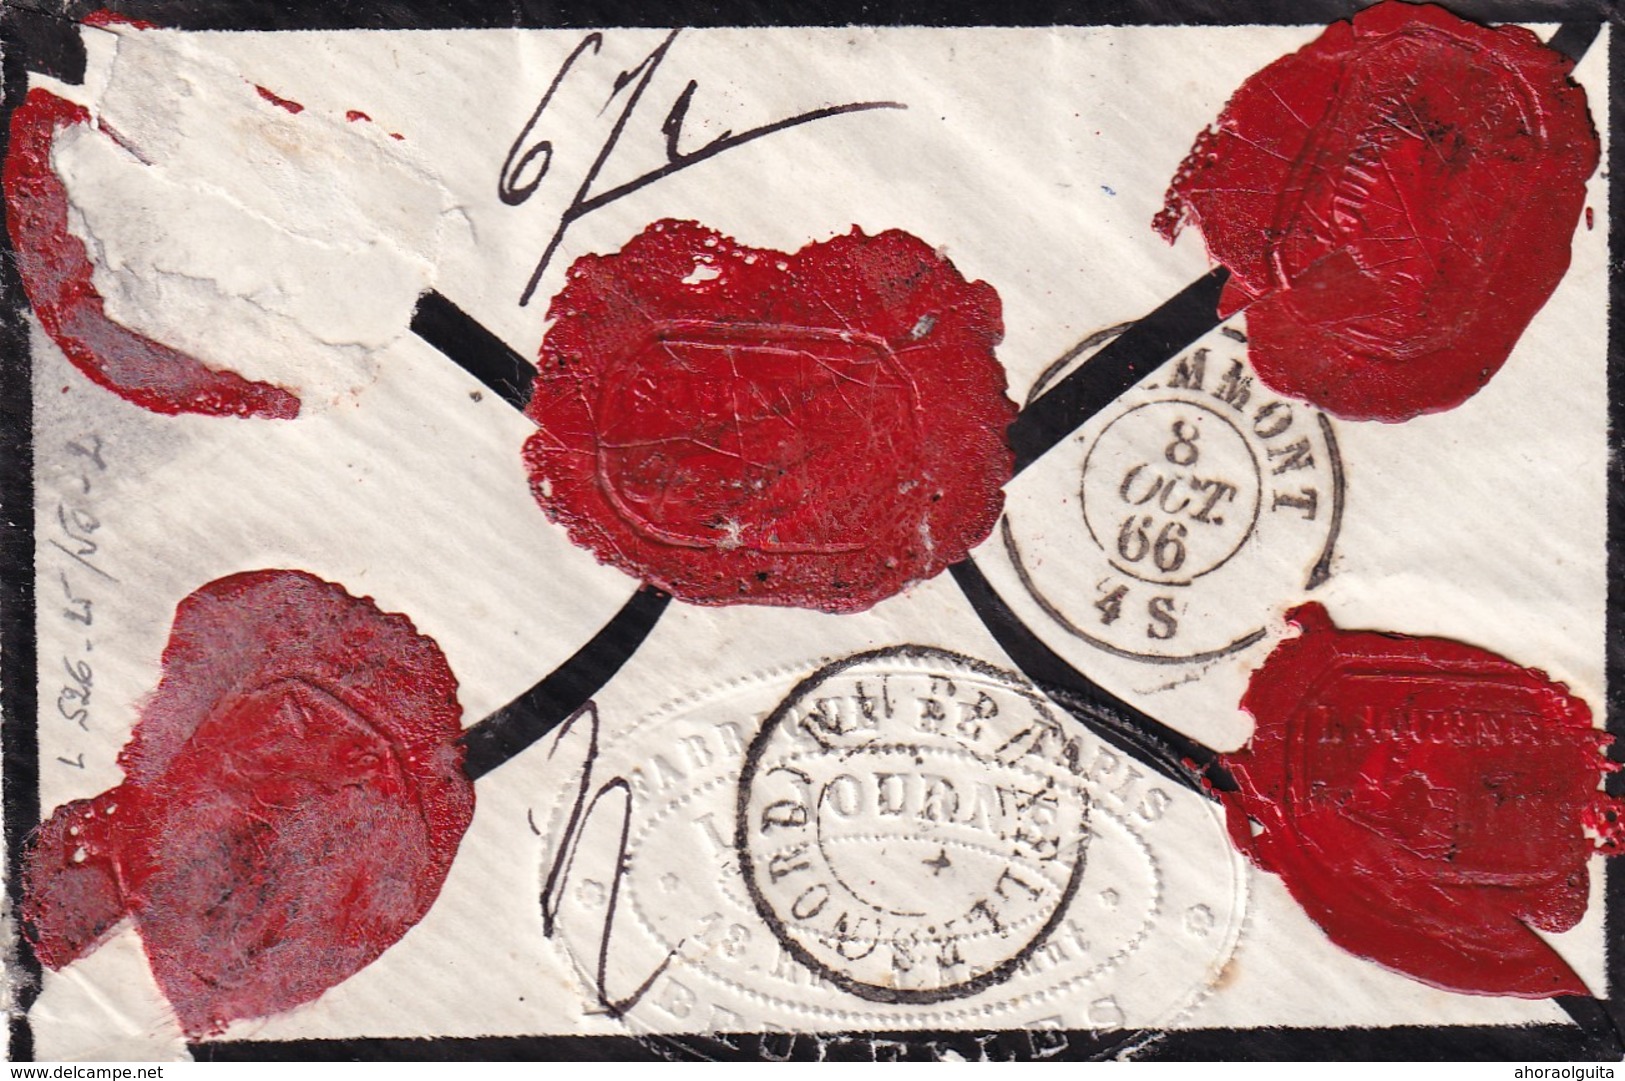 DDW 909  --  Enveloppe TP 20 BRUXELLES 1866 - CHARGE Vers GRAMMONT - Fabrique De Tapis Journez - 1865-1866 Perfil Izquierdo